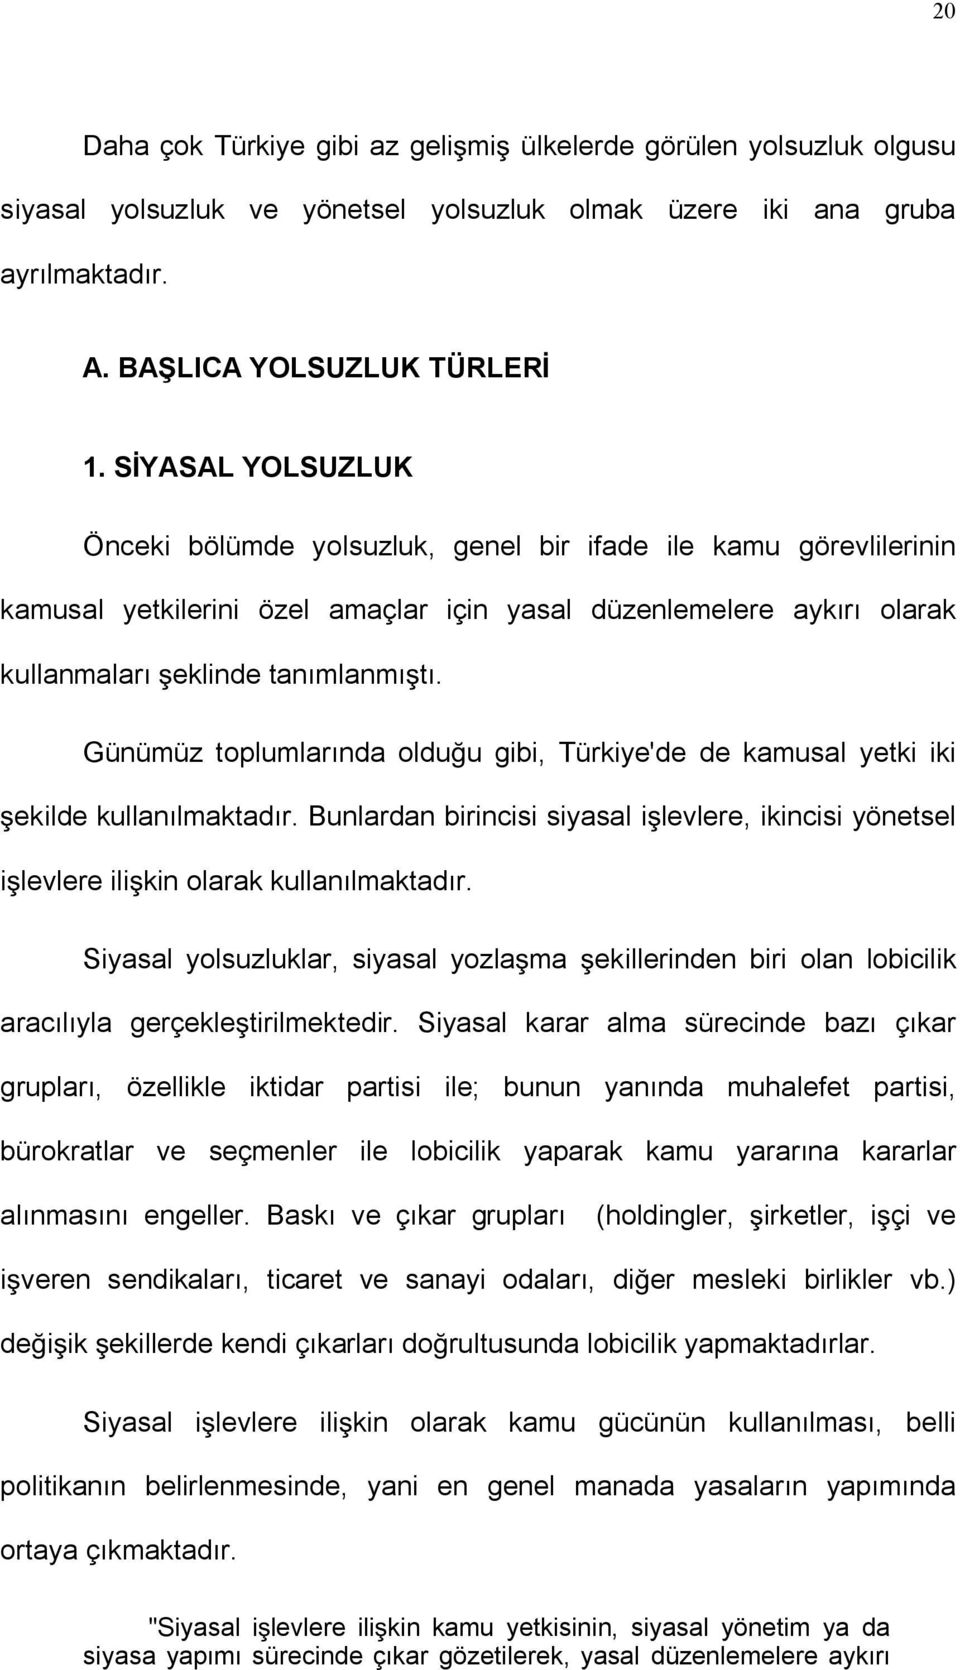 Günümüz toplumlarında oldu u gibi, Türkiye'de de kamusal yetki iki ekilde kullanılmaktadır. Bunlardan birincisi siyasal i levlere, ikincisi yönetsel i levlere ili kin olarak kullanılmaktadır.